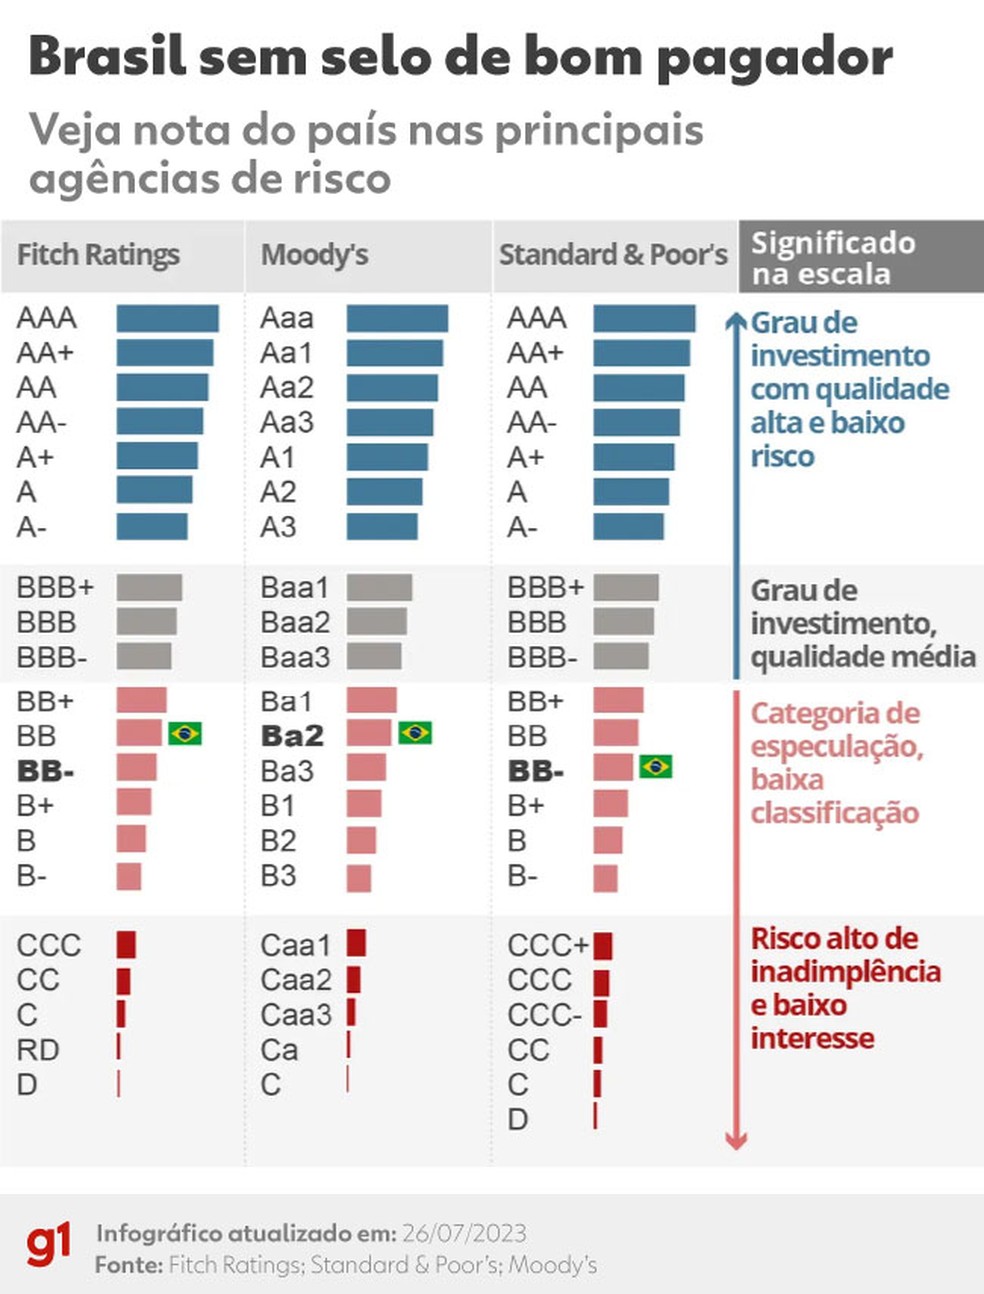 Veja as notas de crédito do Brasil em todas as agências de risco — Foto: Arte g1